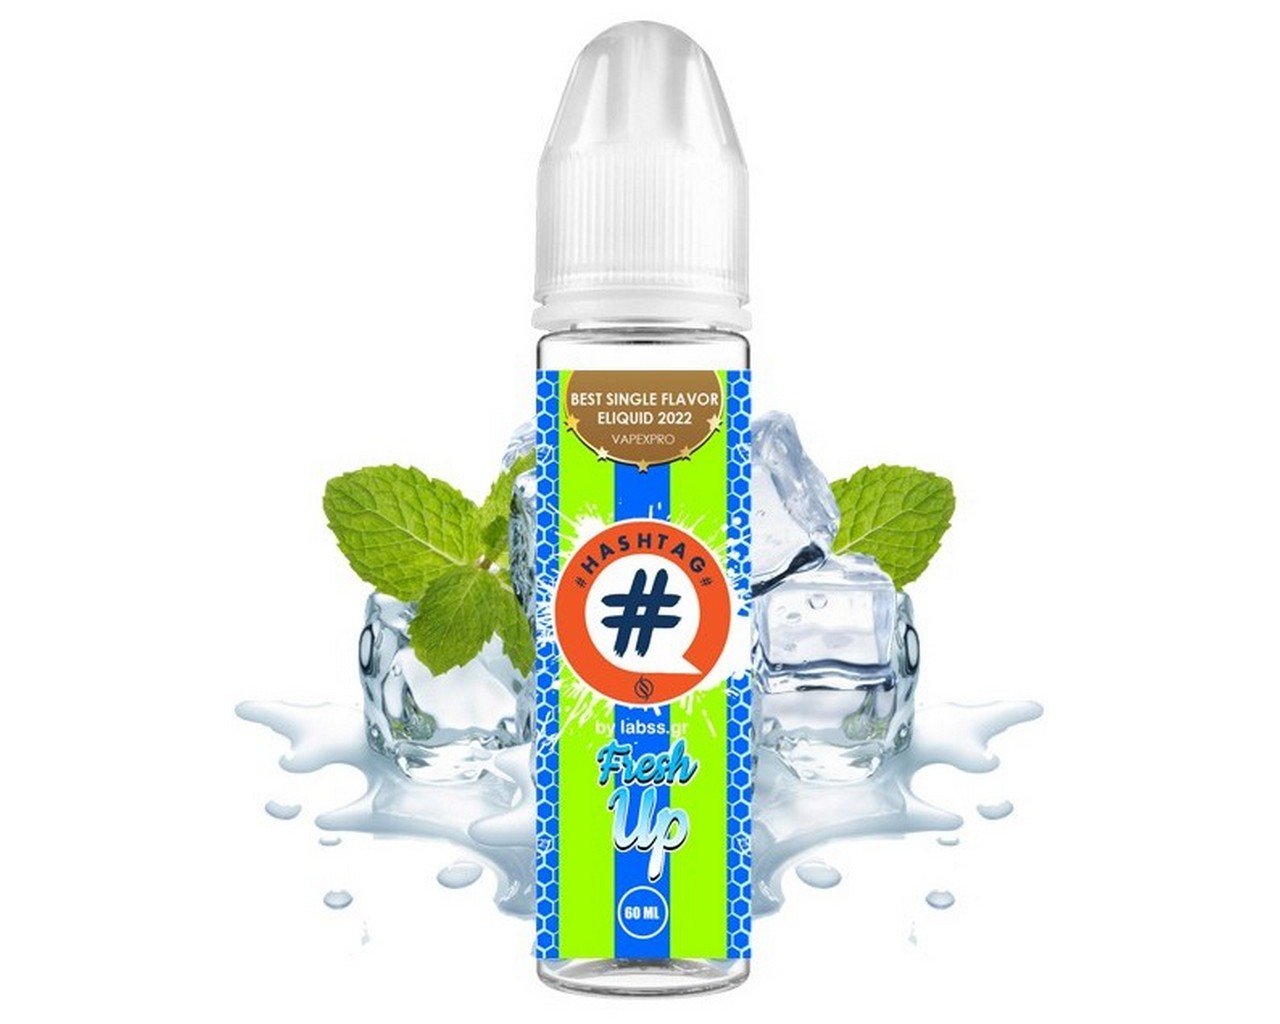 Hashtag Flavorshot Fresh Up 12ml/60ml